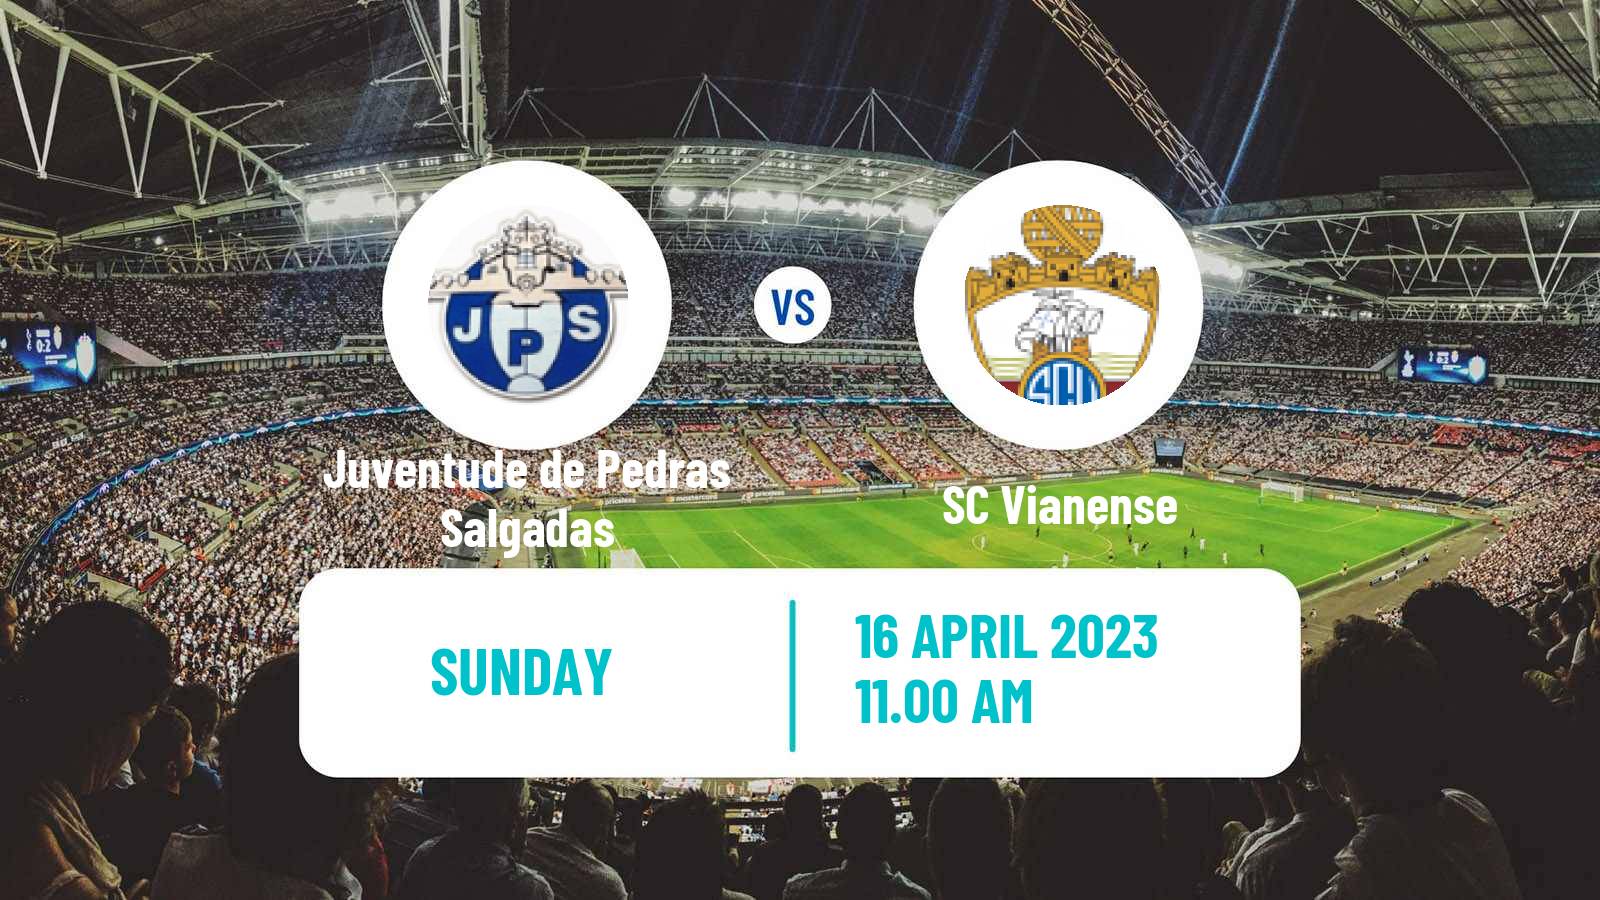 Soccer Campeonato de Portugal Juventude de Pedras Salgadas - Vianense